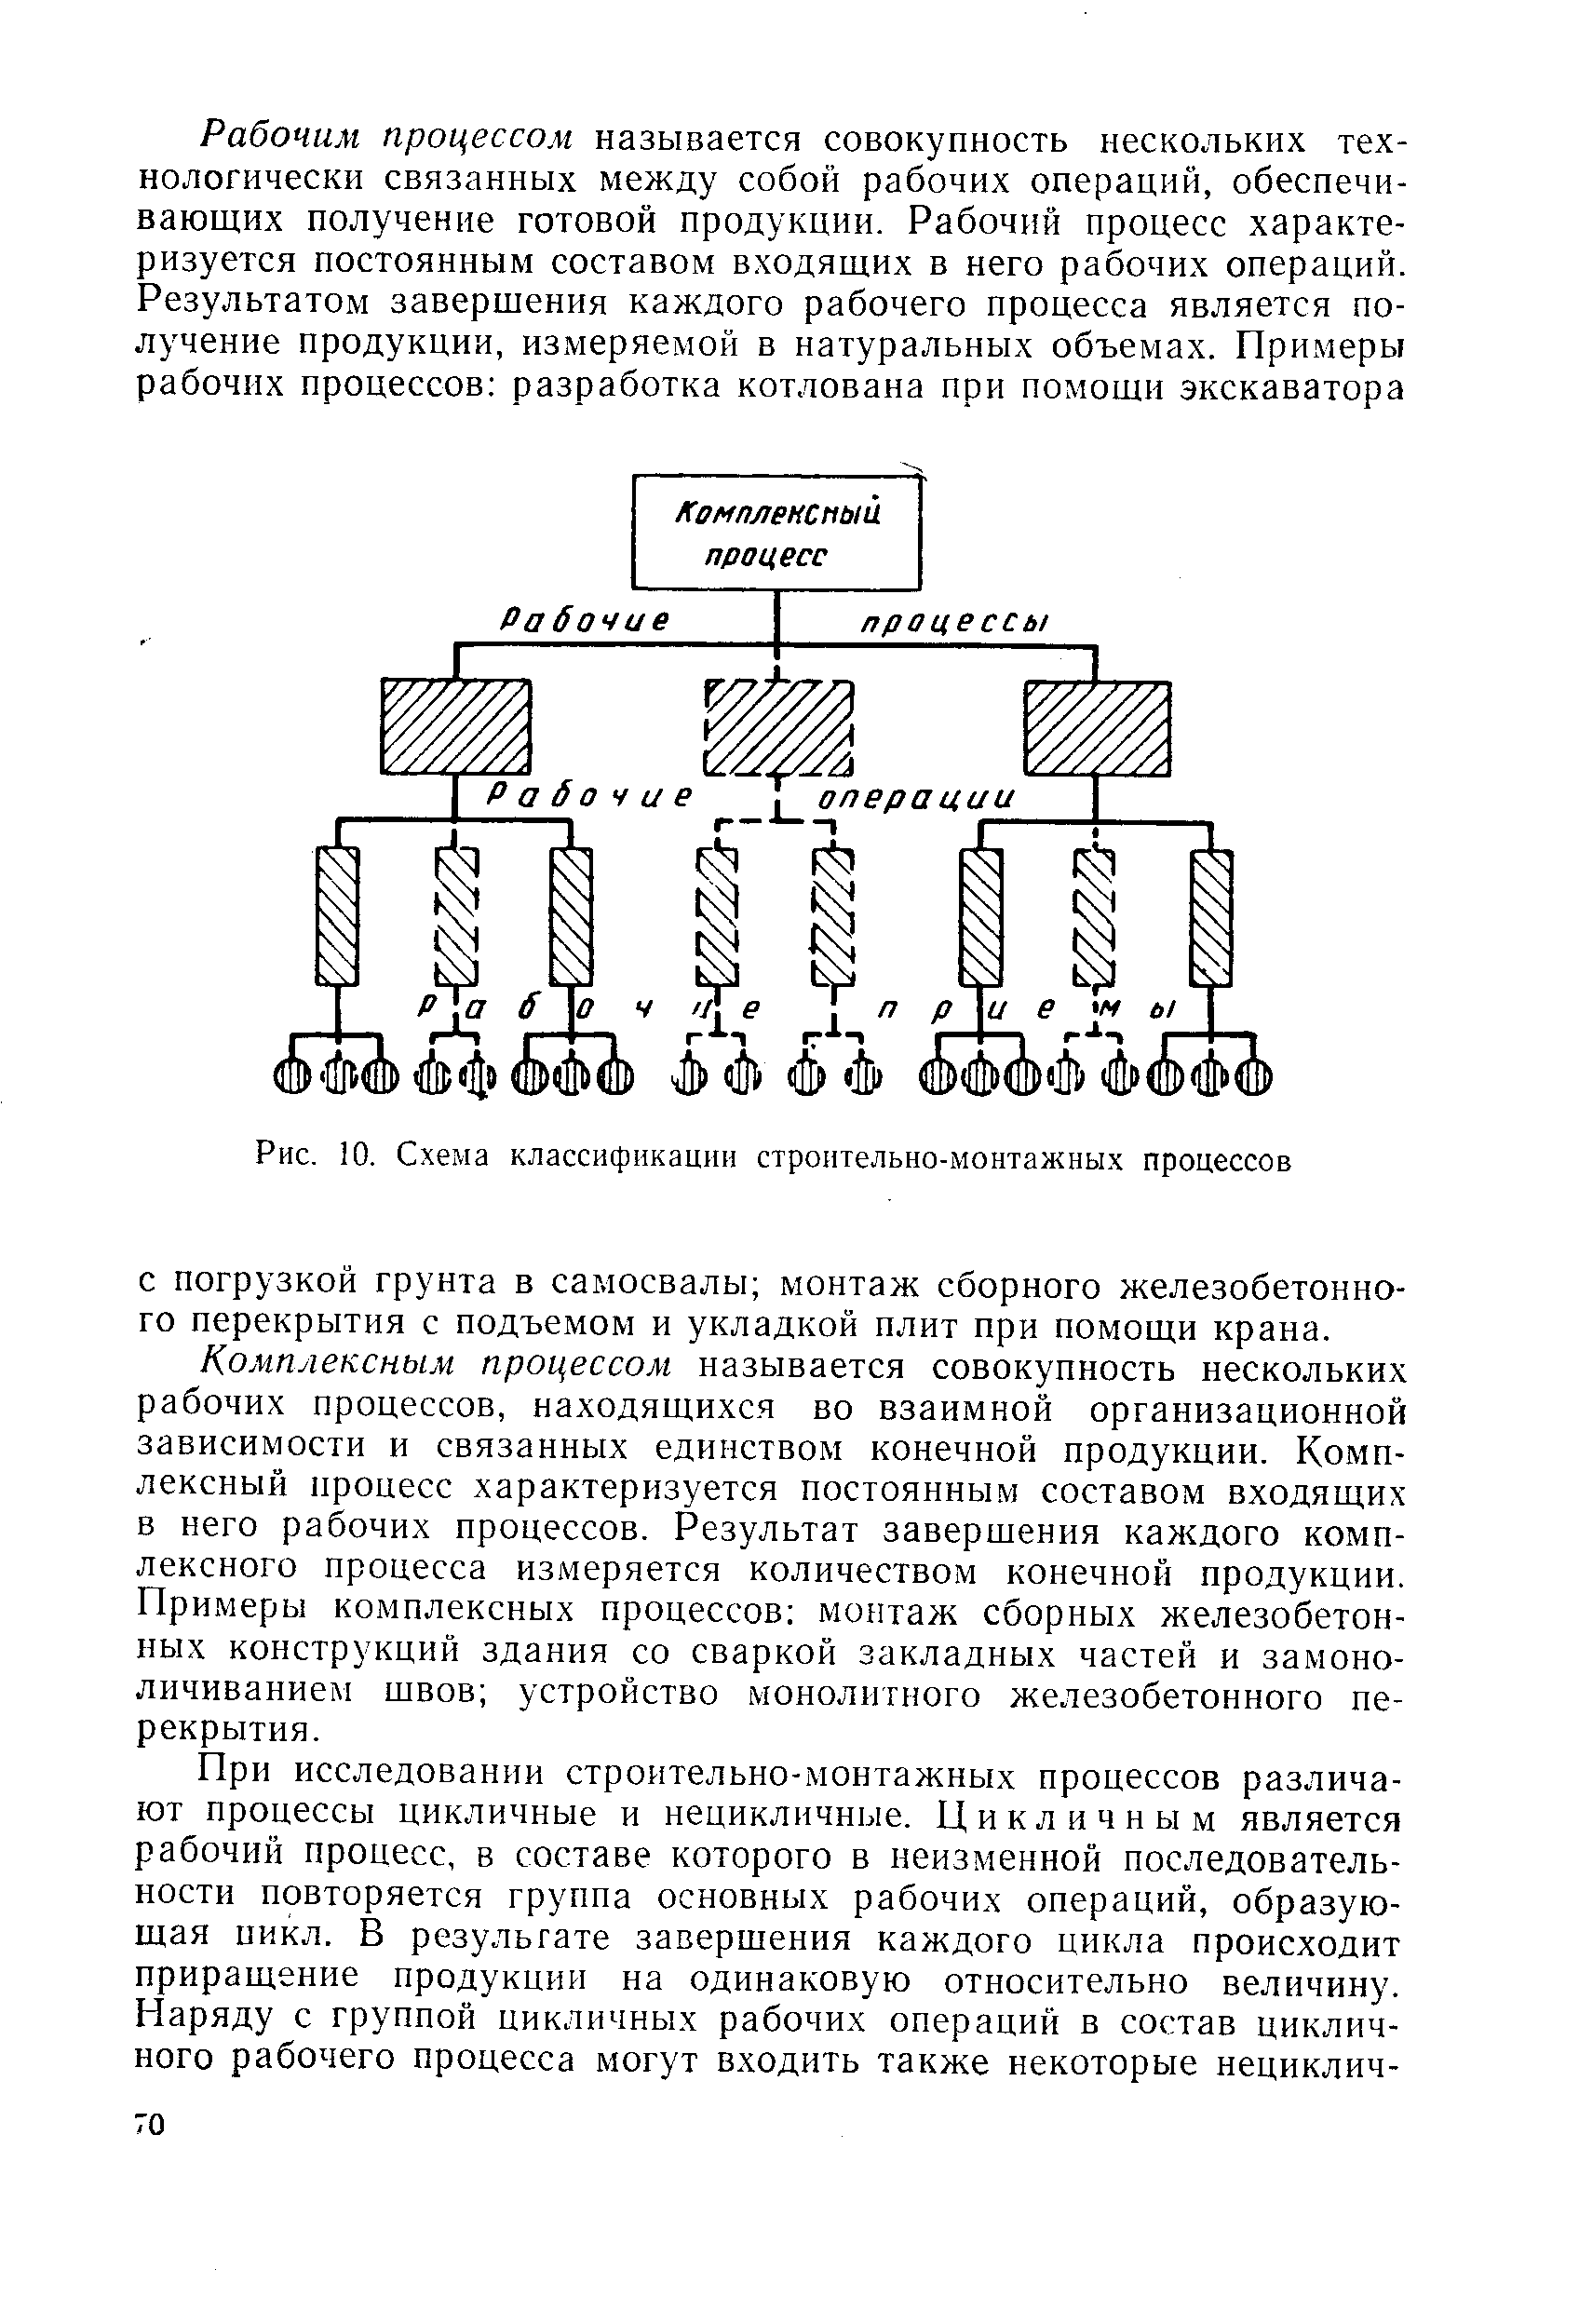 Рис. 10. Схема классификации строительно-монтажных процессов
